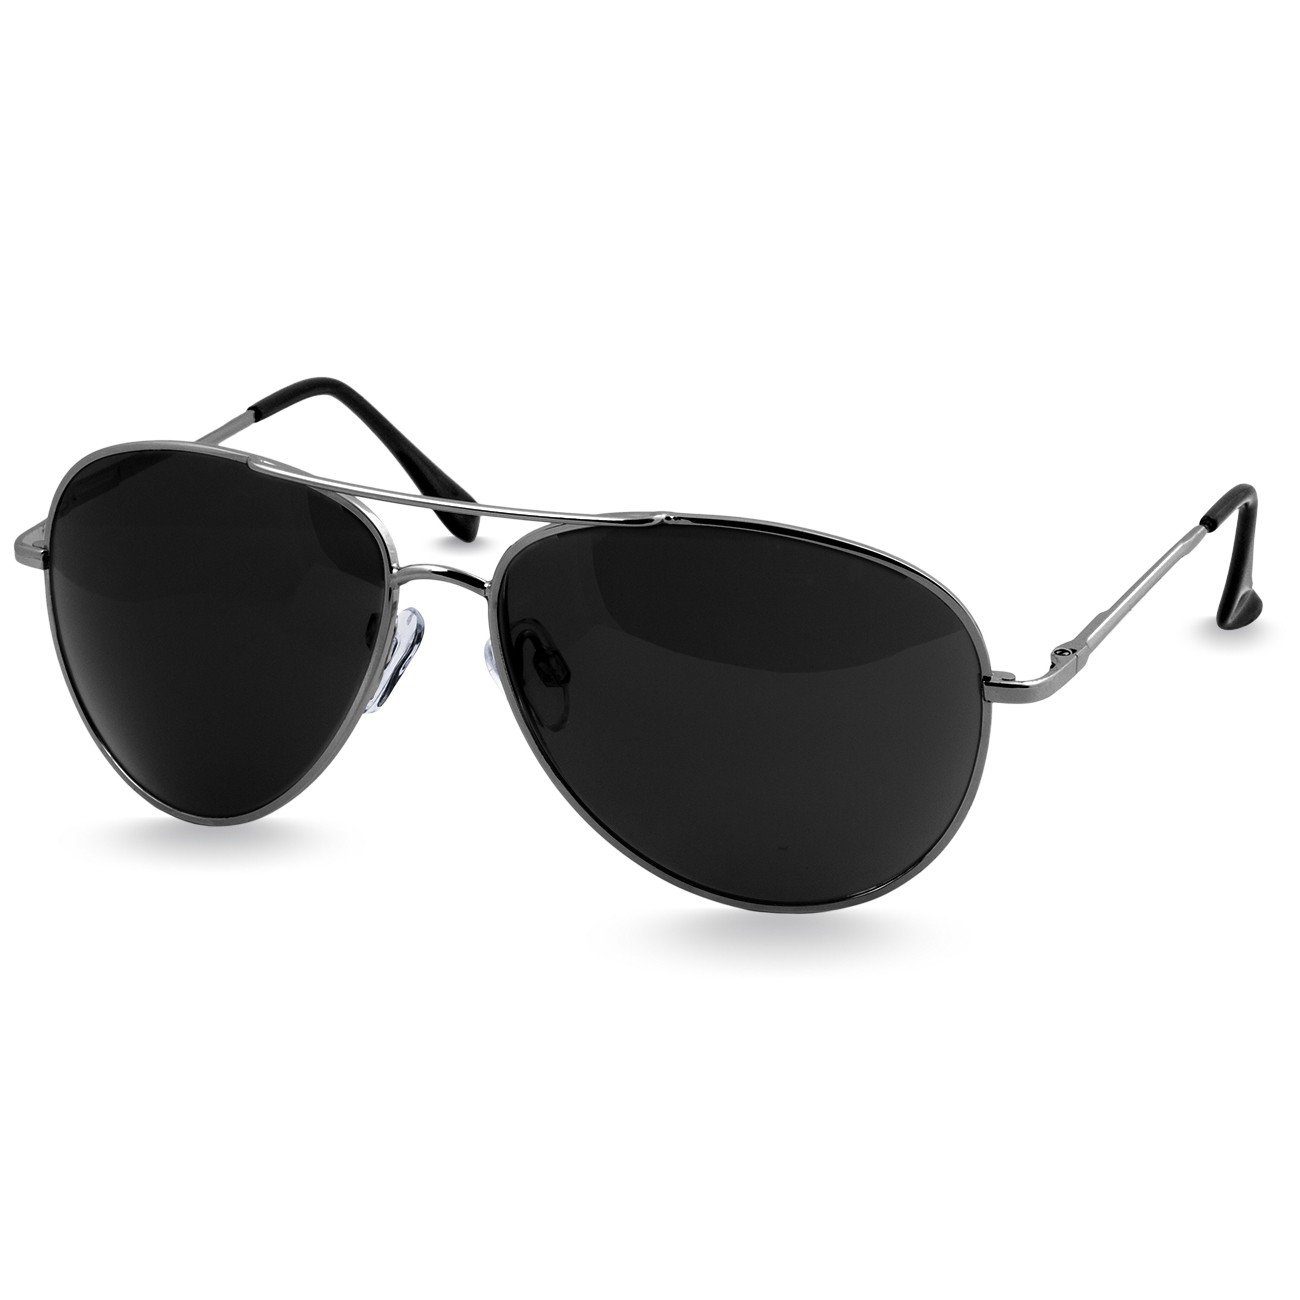 Caspar Sonnenbrille SG013 klassische Unisex Retro Pilotenbrille silber / schwarz